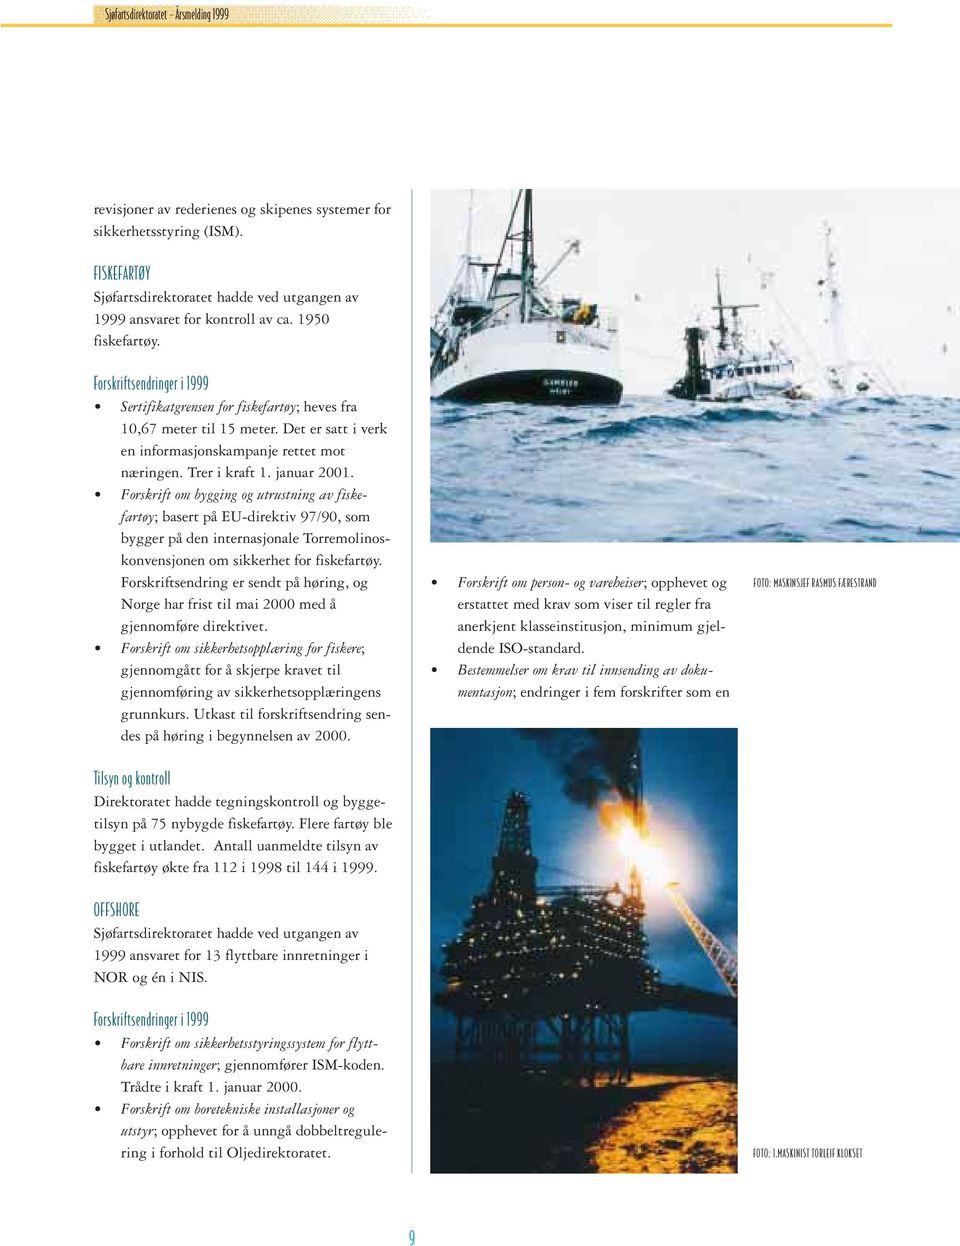 januar 2001. Forskrift om bygging og utrustning av fiskefartøy; basert på EU-direktiv 97/90, som bygger på den internasjonale Torremolinoskonvensjonen om sikkerhet for fiskefartøy.